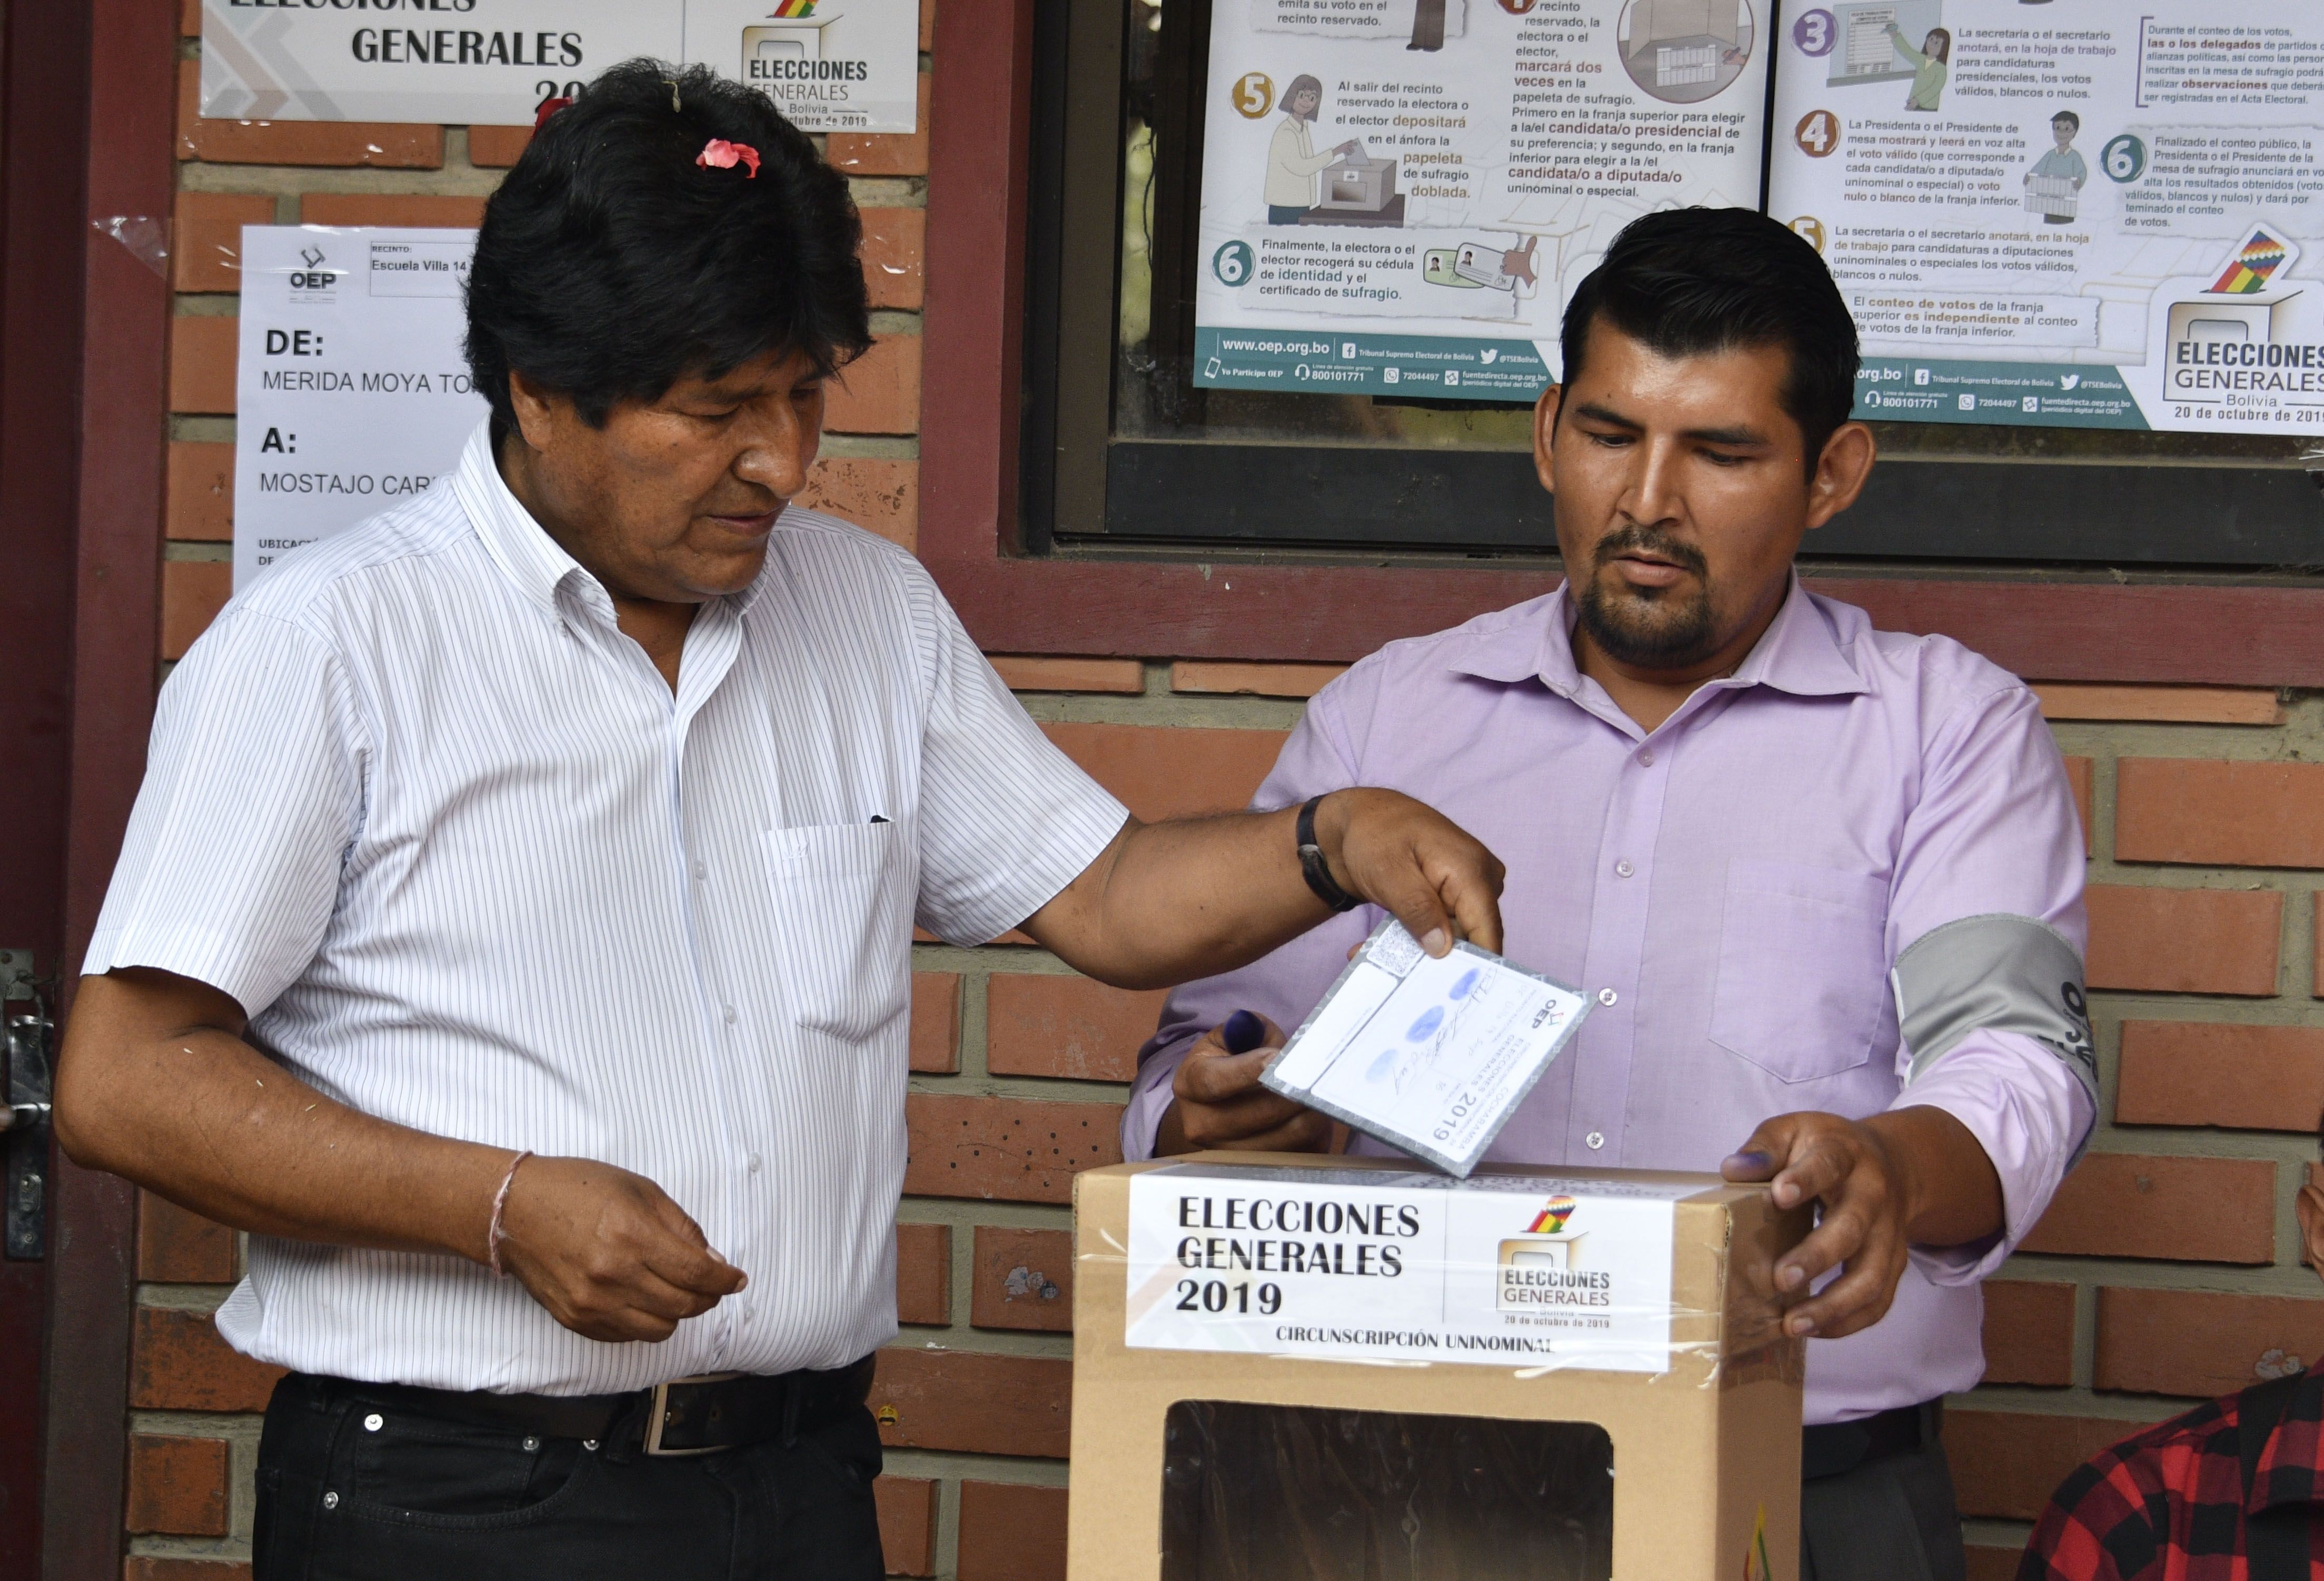 El presidente y candidato presidencial de Bolivia, Evo Morales, emitió su voto durante las elecciones presidenciales en Villa 14 de Septiembre, Chapare, departamento de Cochabamba, Bolivia, (Foto Prensa Libre AFP)